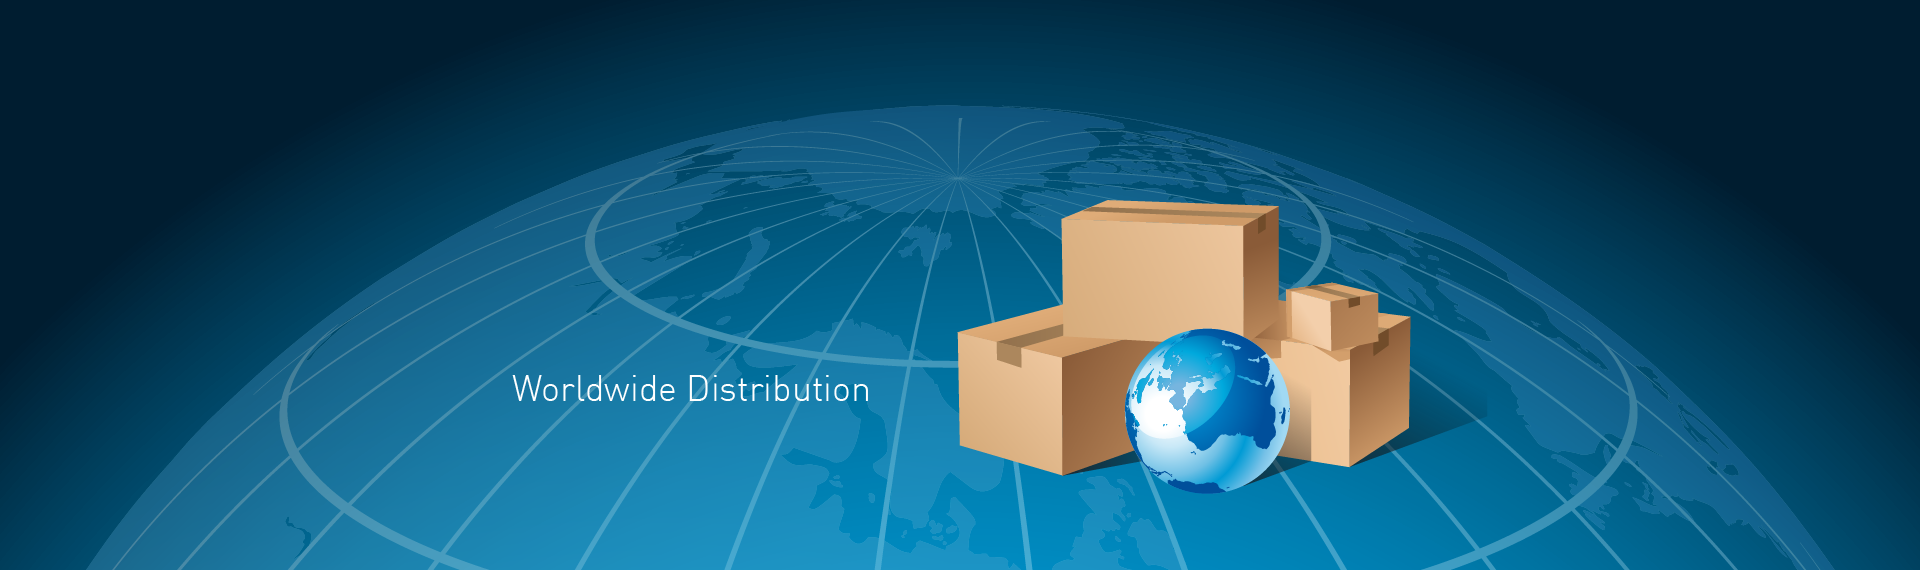 Woldwide distribution